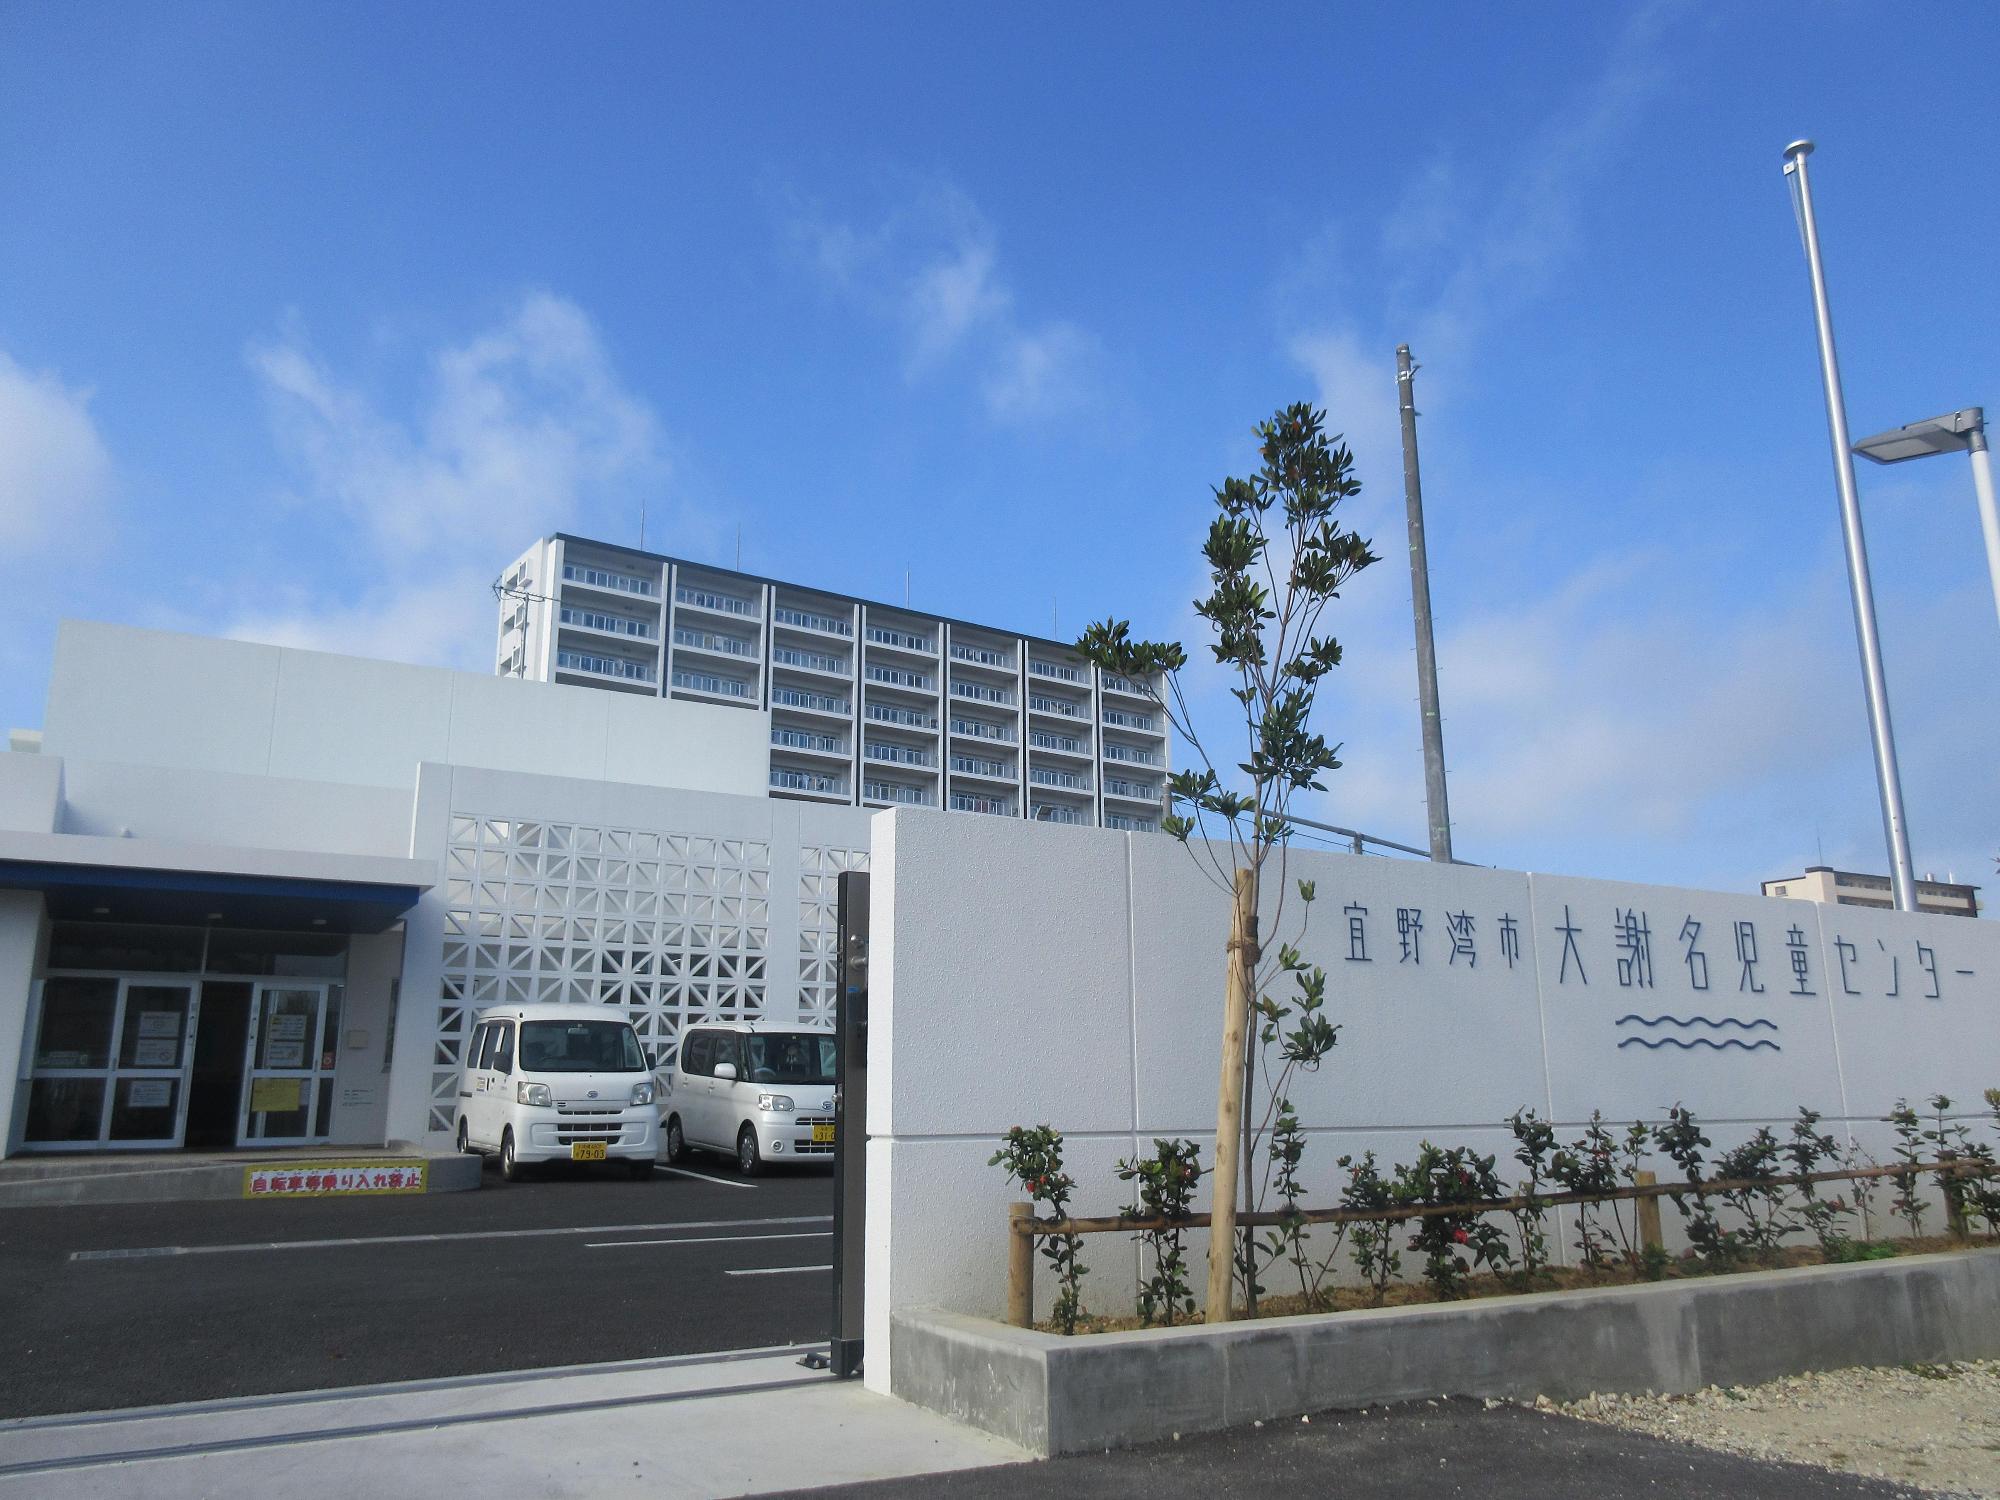 敷地入り口前に宜野湾市大謝名児童センターと書かれてある白い壁と植栽があり、壁の奥に白い外壁の児童センターが写された写真